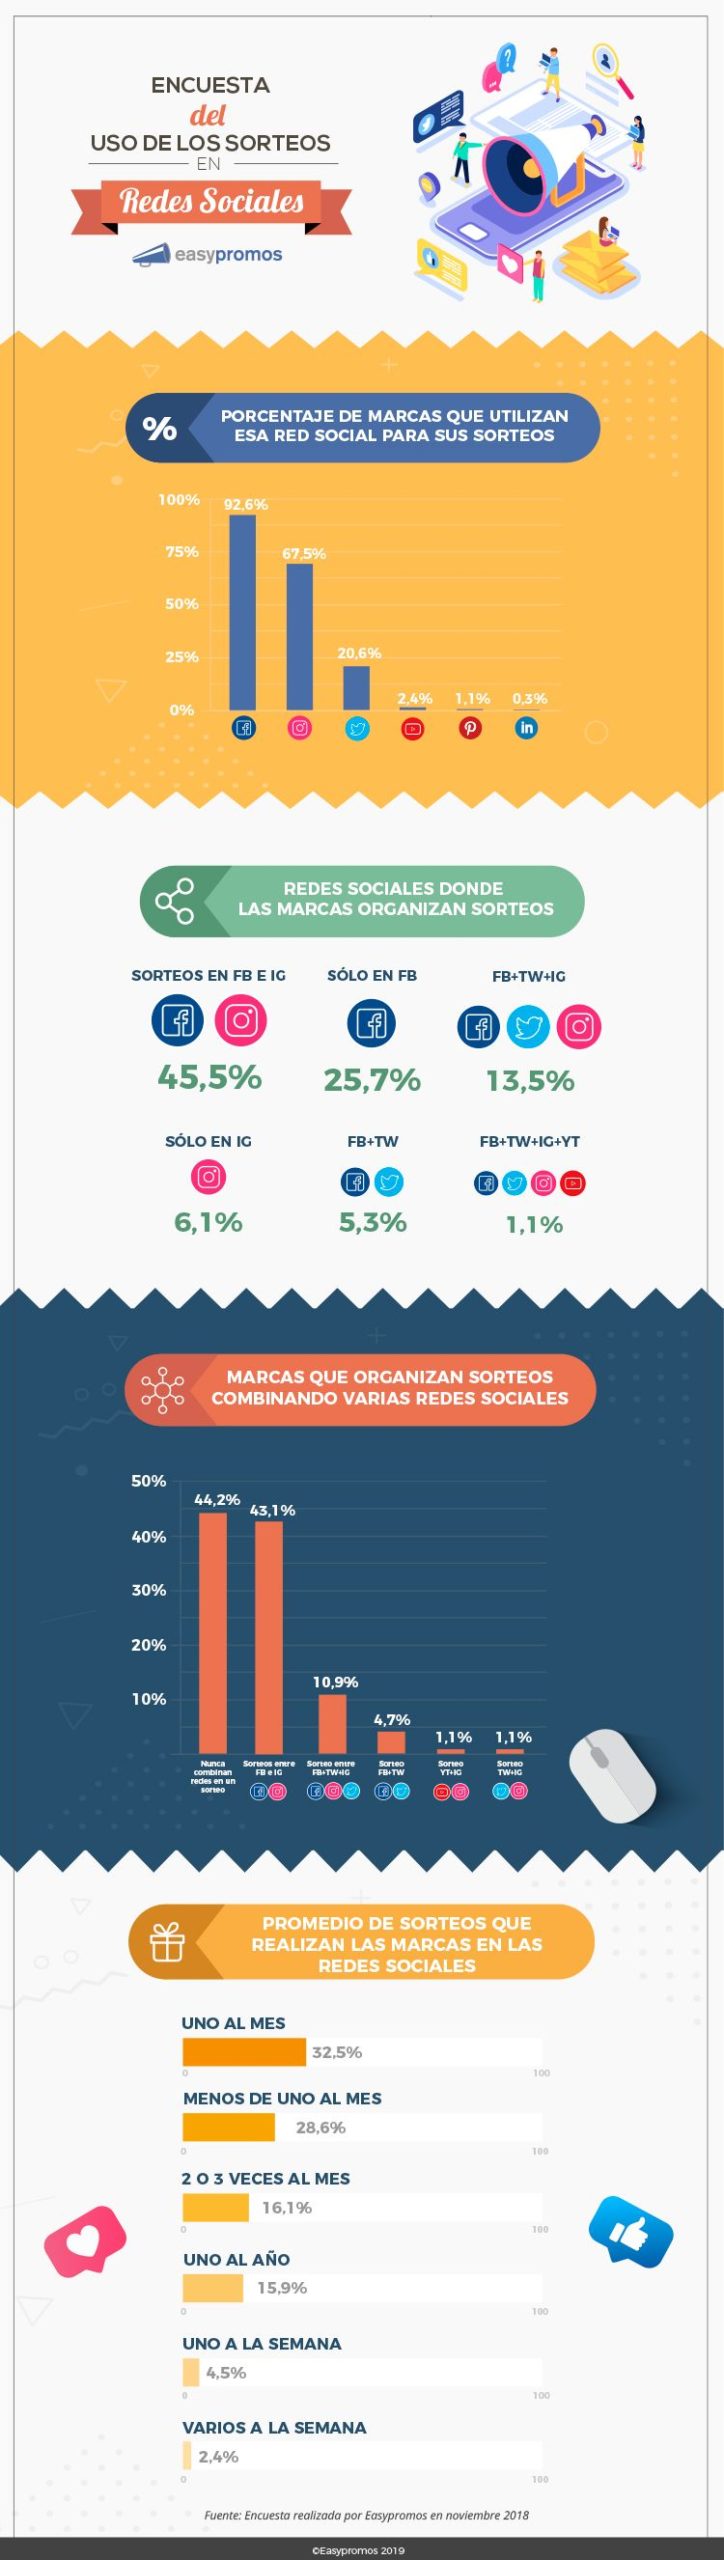 Infografia - Los sorteos en las Redes Sociales #infografia #marketing #socialmedia - TICs y Formación